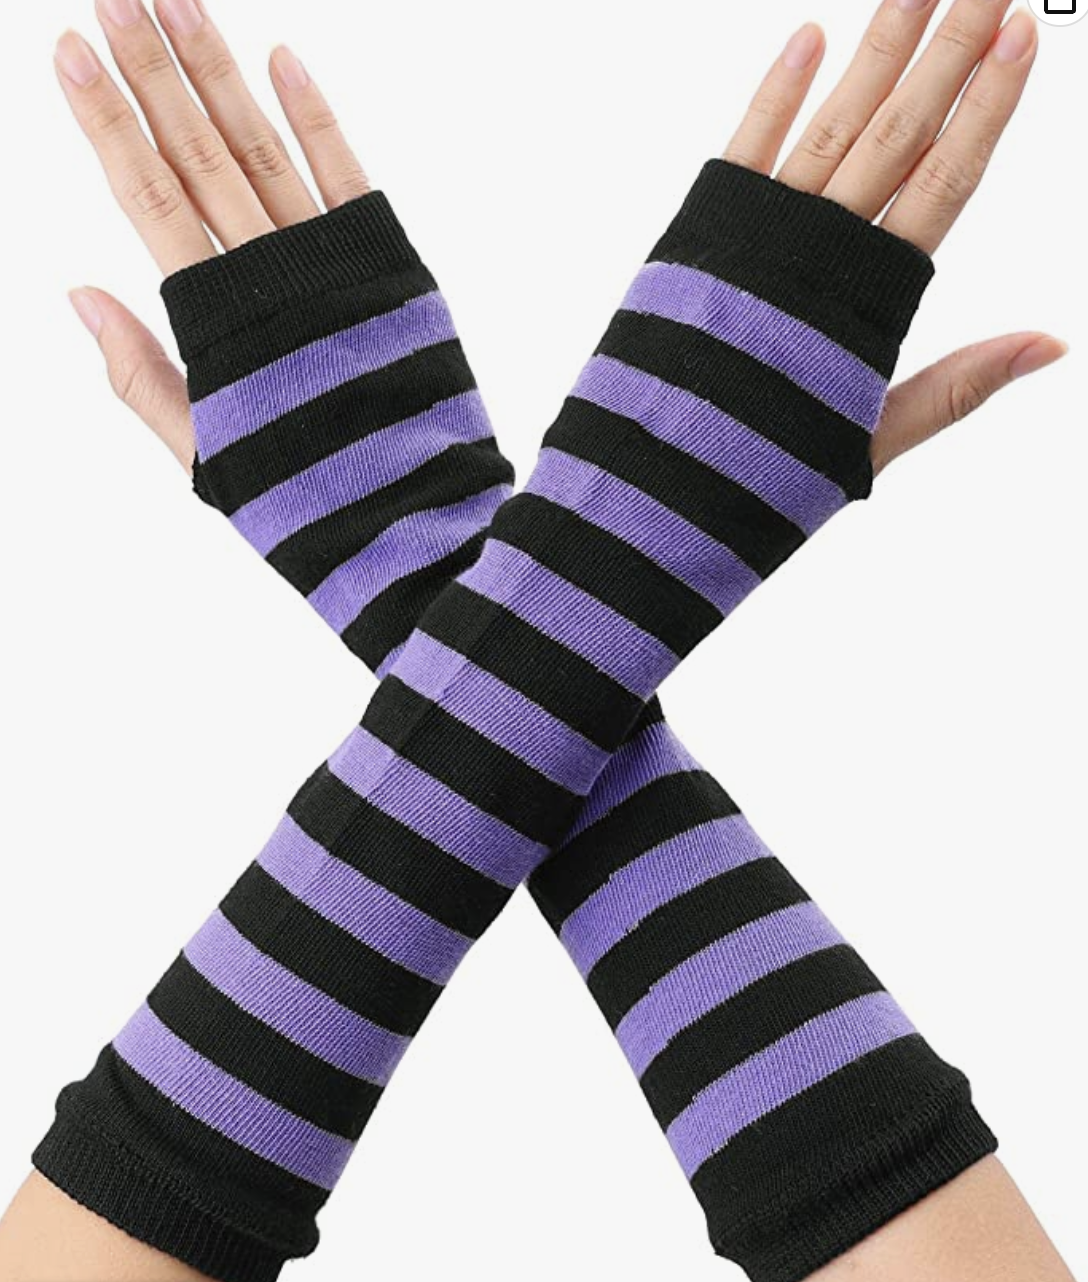 Black and purple fingerless gloves